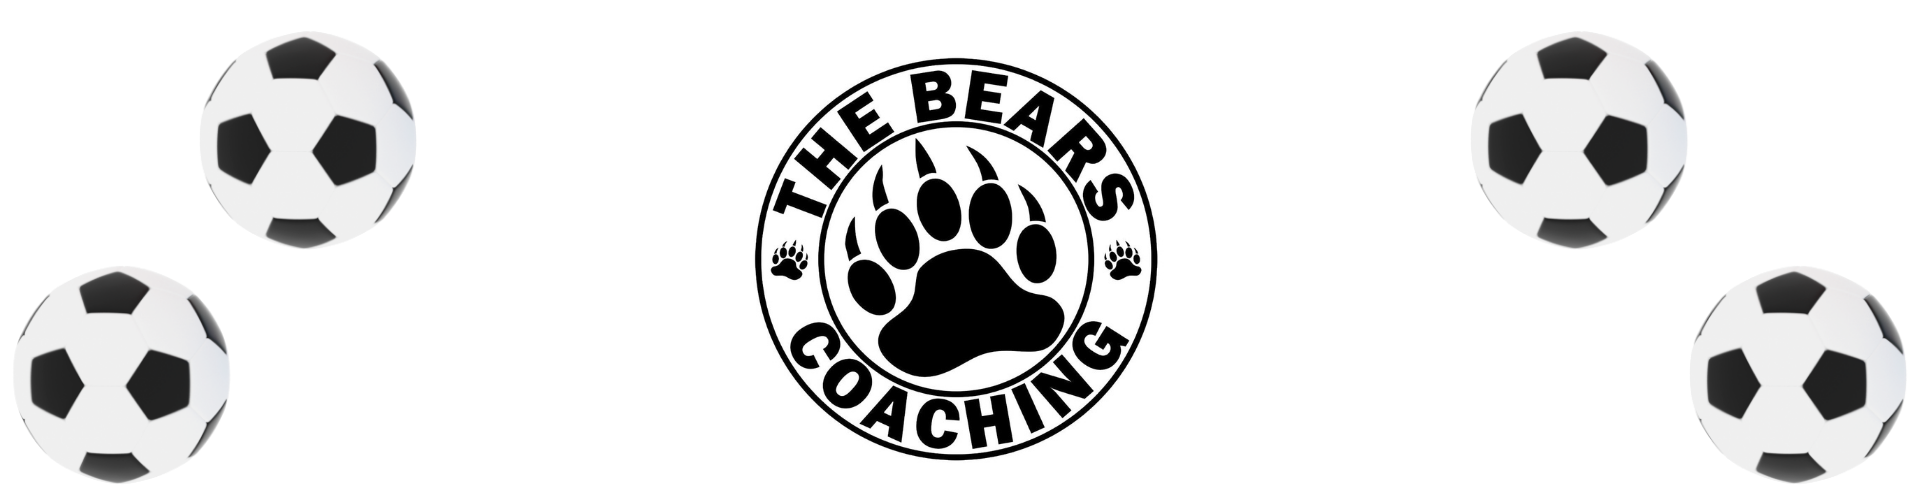 the bears coaching